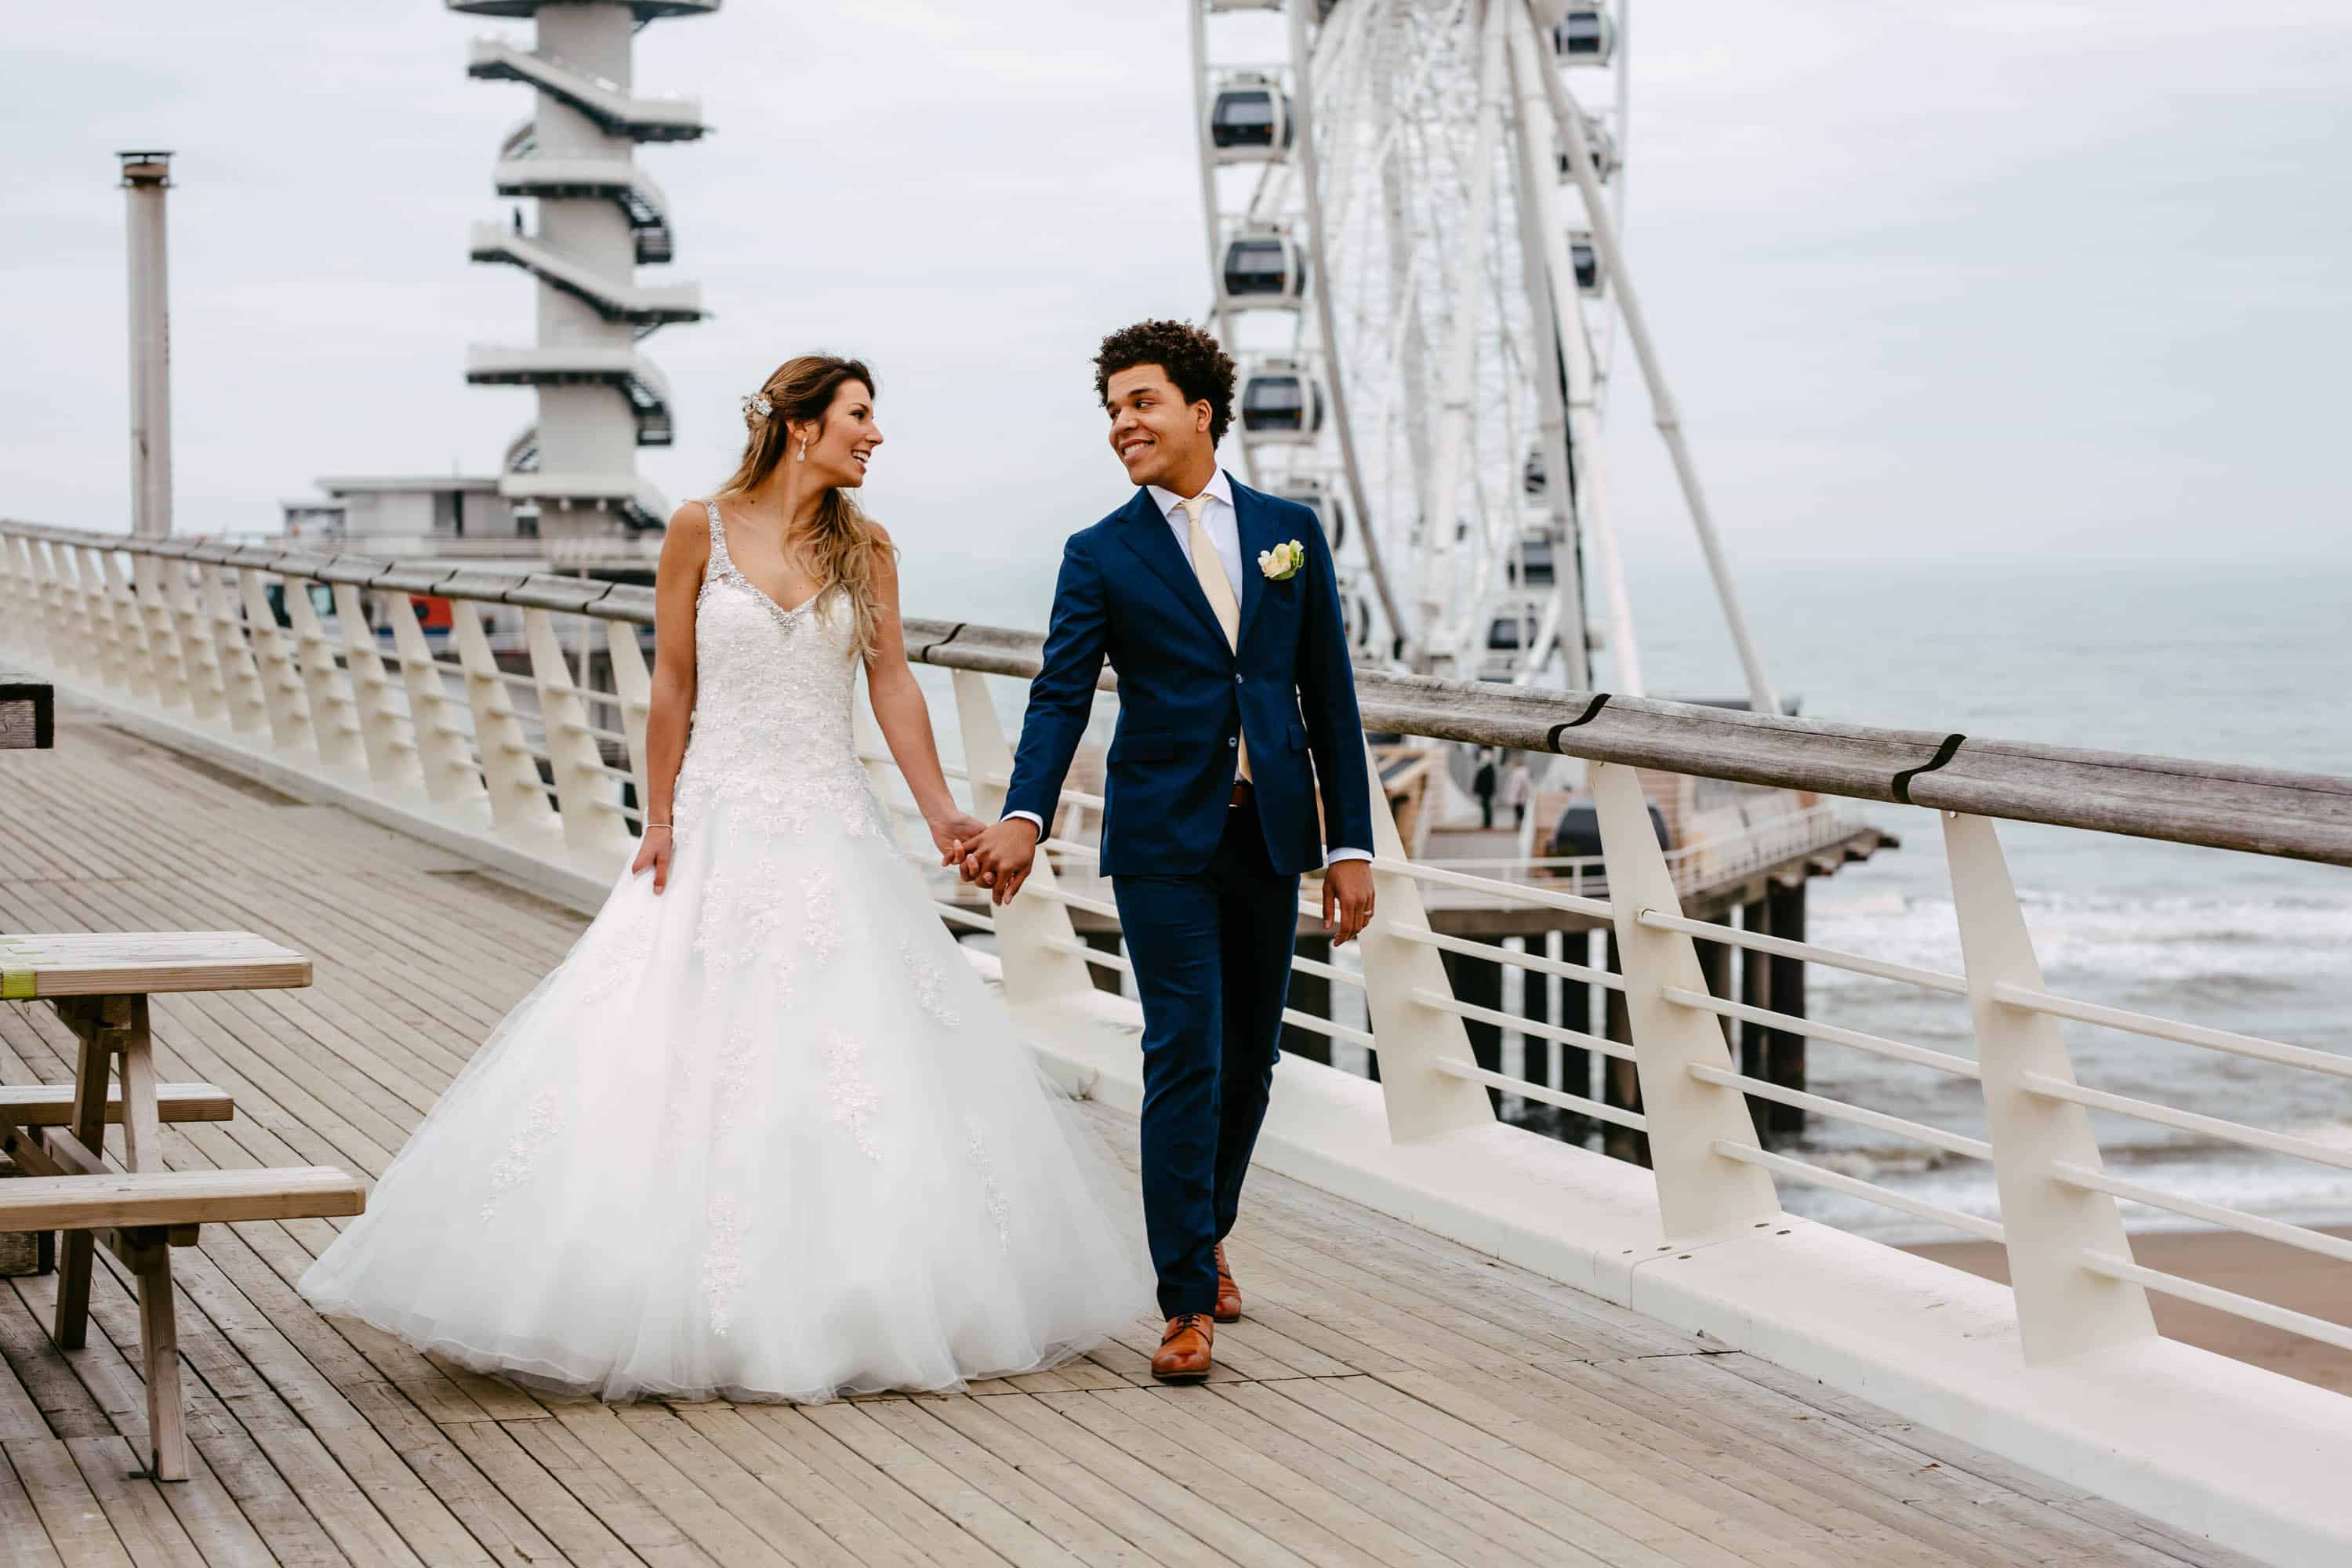 A bride and groom walk on a boardwalk near a Ferris wheel.